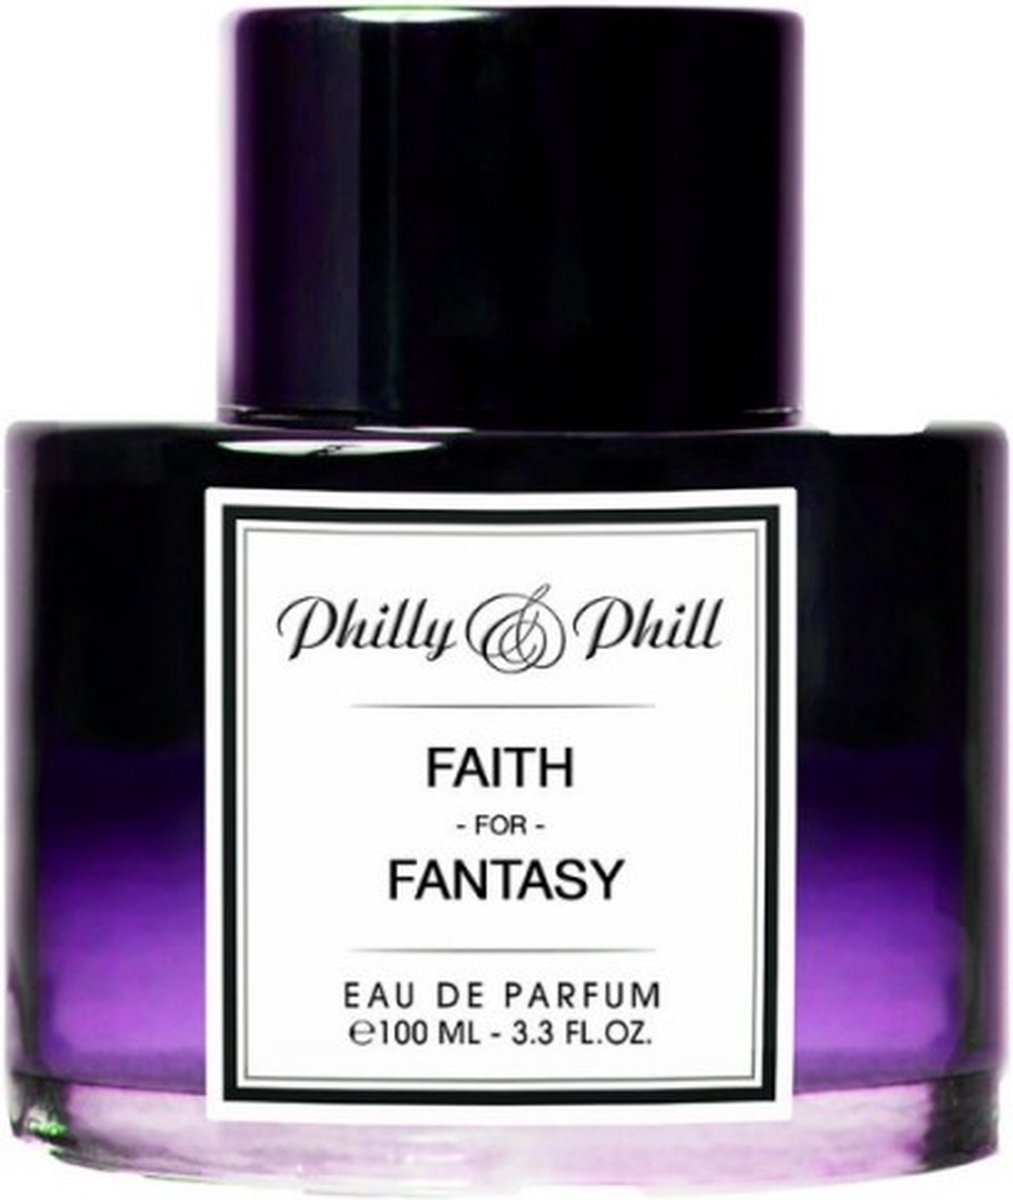 philly & Phill faith for fantasy Eau de Parfum 100ml